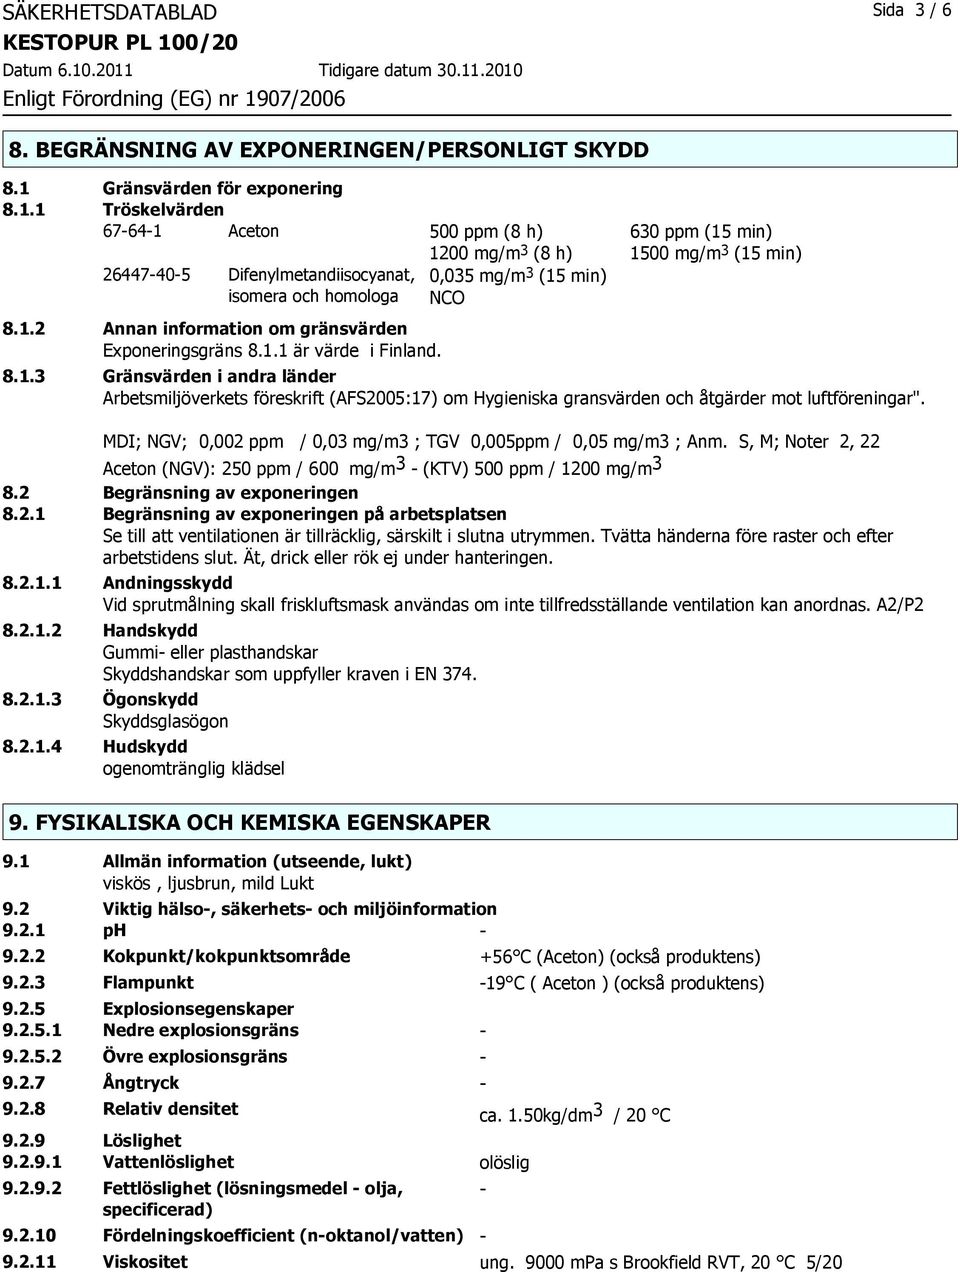 1 Tröskelvärden 67-64-1 Aceton 500 ppm (8 h) 630 ppm (15 min) 1200 mg/m 3 (8 h) 1500 mg/m 3 (15 min) 26447-40-5 Difenylmetandiisocyanat, isomera och homologa 0,035 mg/m 3 (15 min) NCO 8.1.2 Annan information om gränsvärden Exponeringsgräns 8.